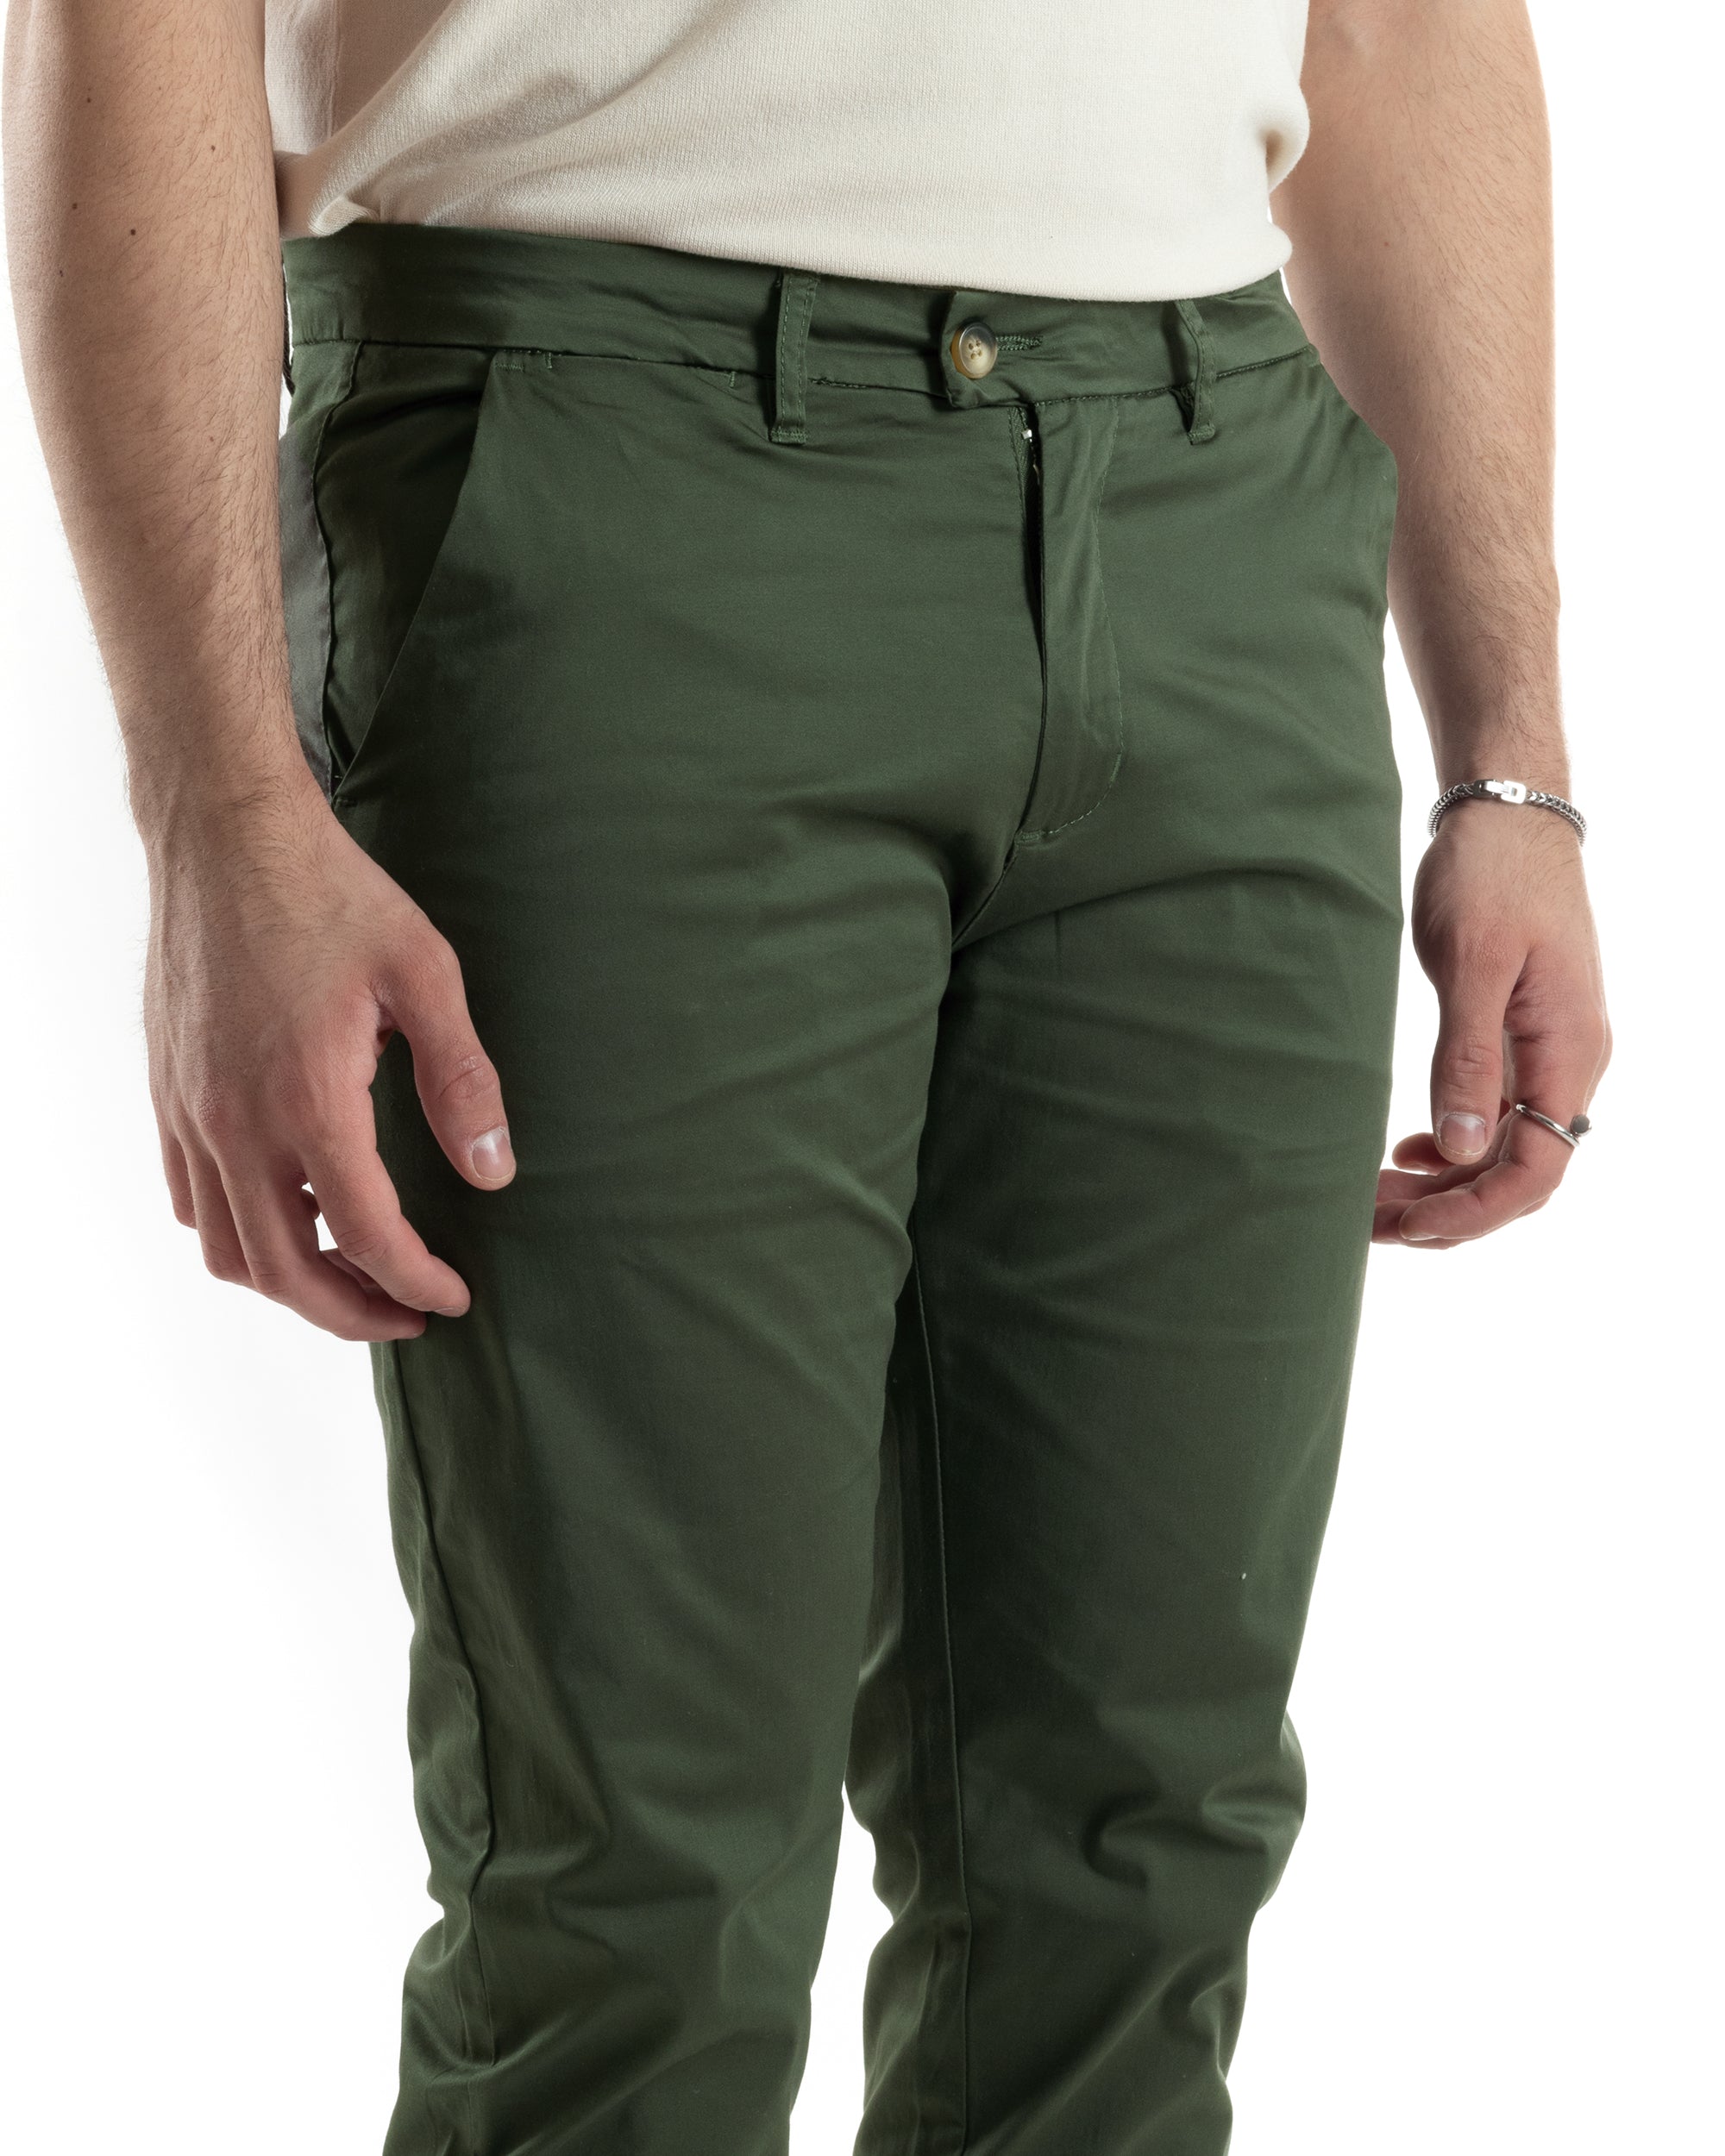 Pantaloni Uomo Cotone Raso Tasca America Slim Fit Abbottonatura Allungata Tinta Unita Verde GIOSAL-P6062A